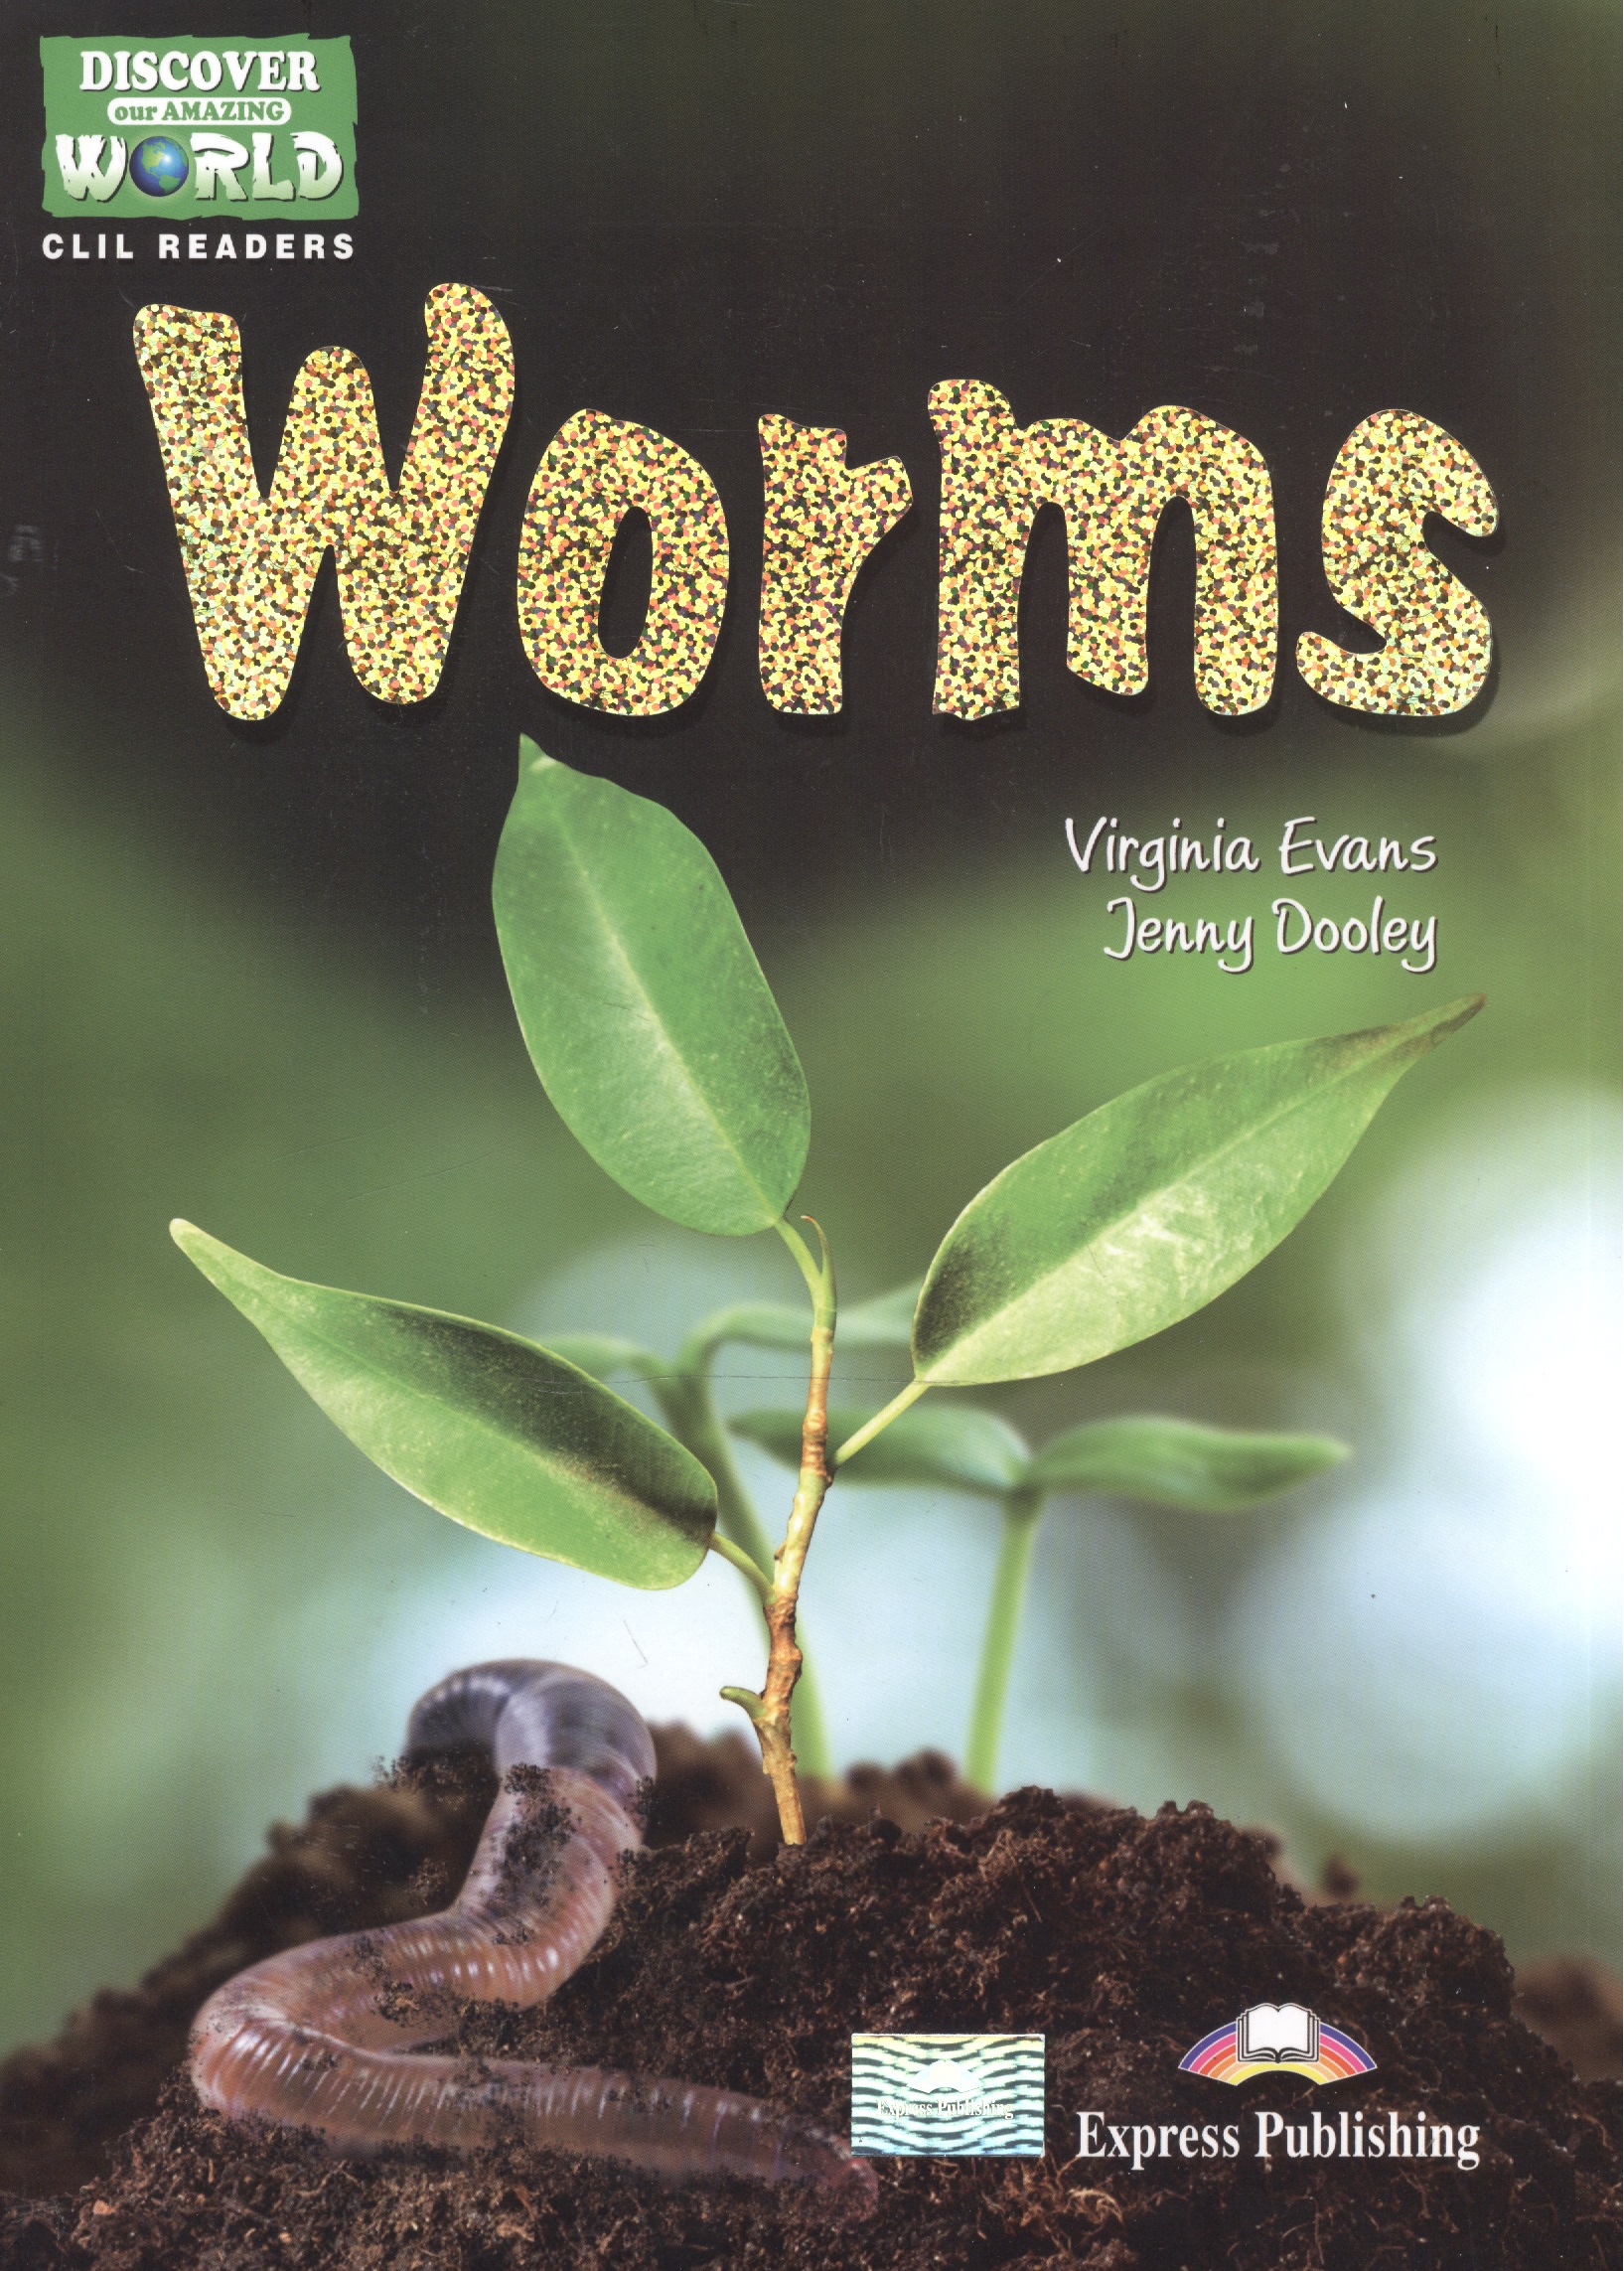 The Worms. Reader. Книга для чтения